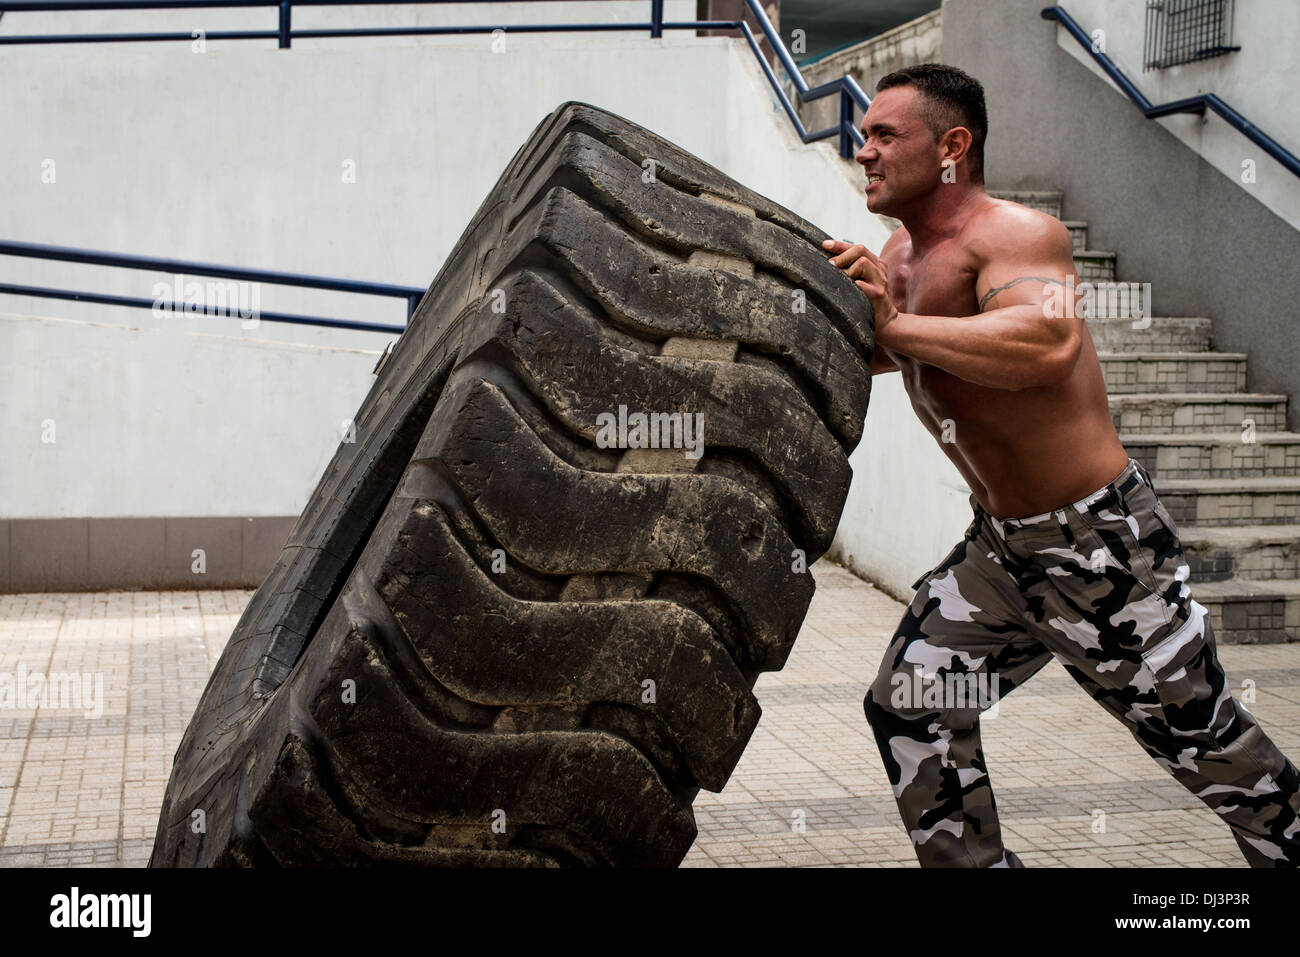 Un homme musclé qui participent à une séance d'entraînement en faisant monter un pneu flip Banque D'Images